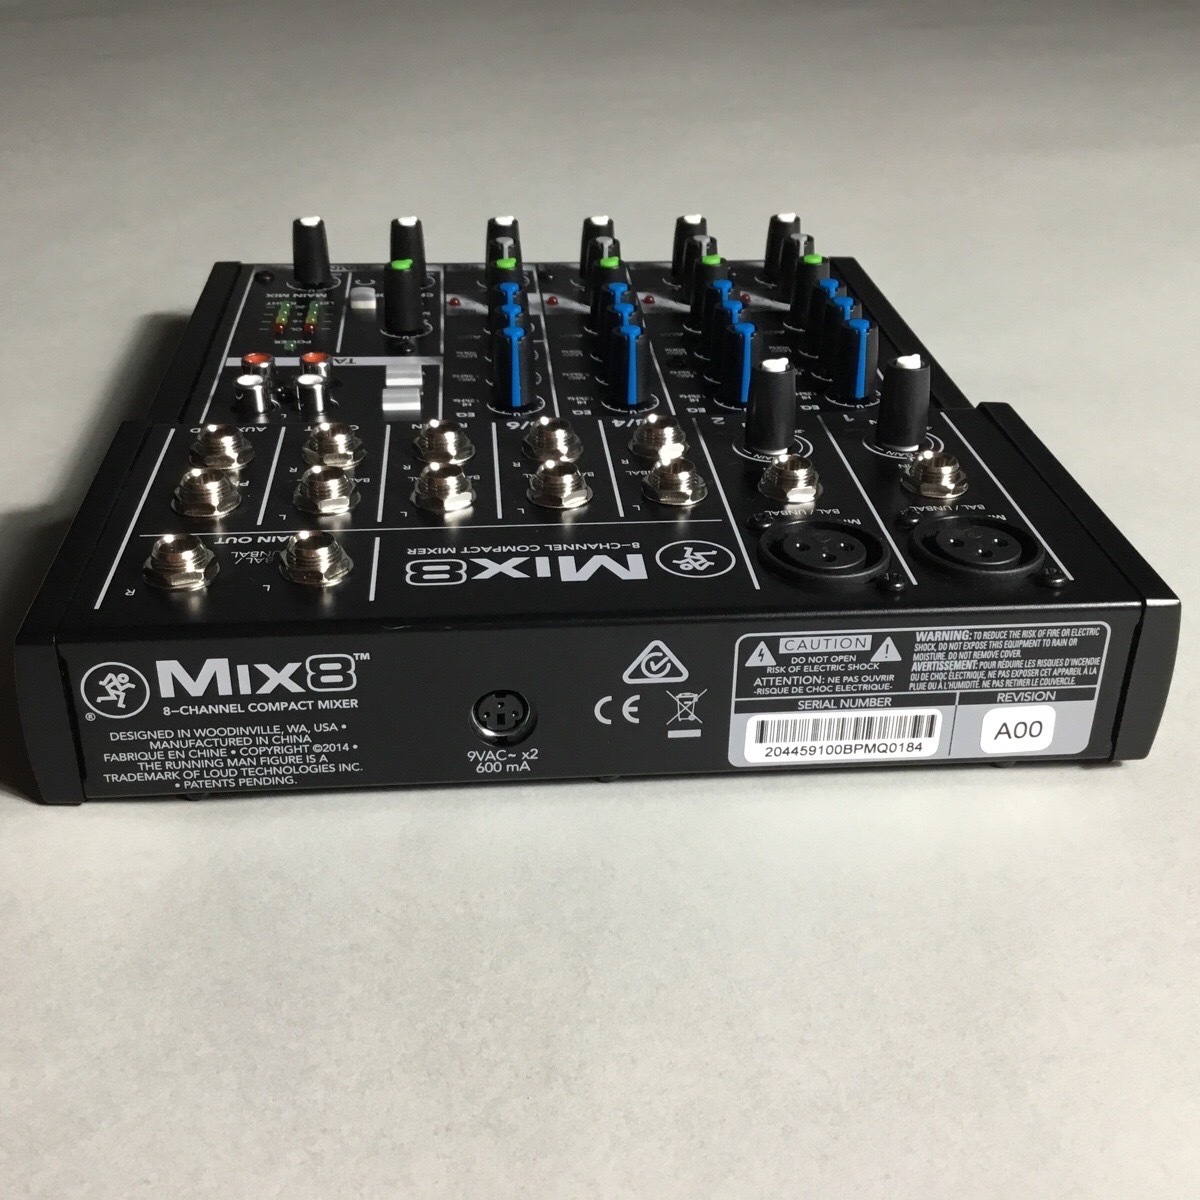 MIX8 MACKIE - 配信機器・PA機器・レコーディング機器